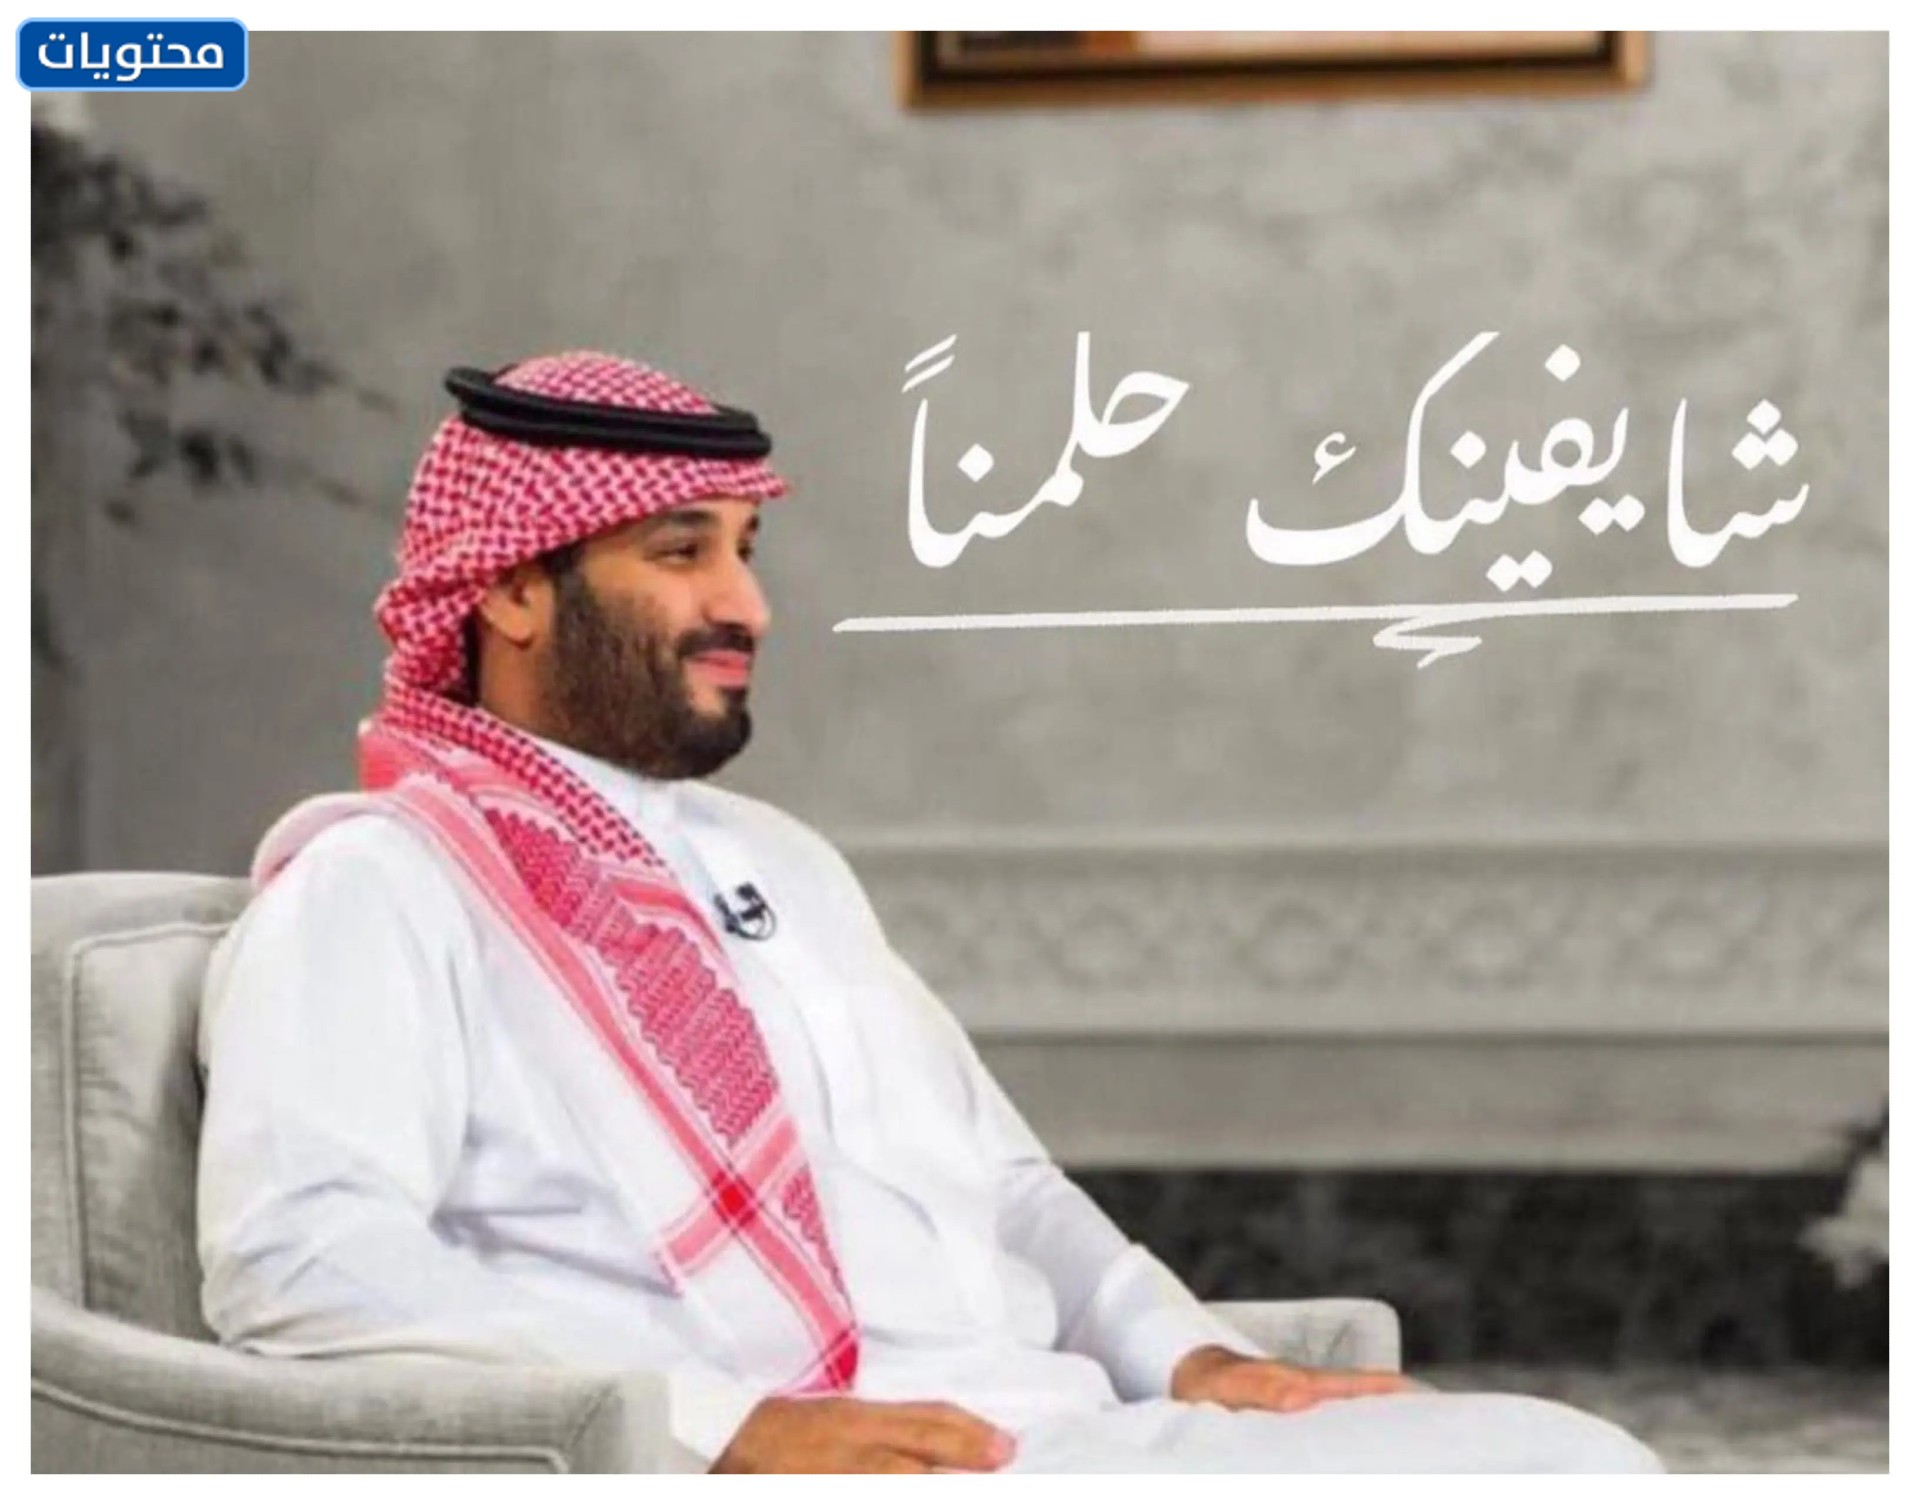 تهنئة رسمية لولي العهد محمد بن سلمان بعيد ميلاده بالصور 